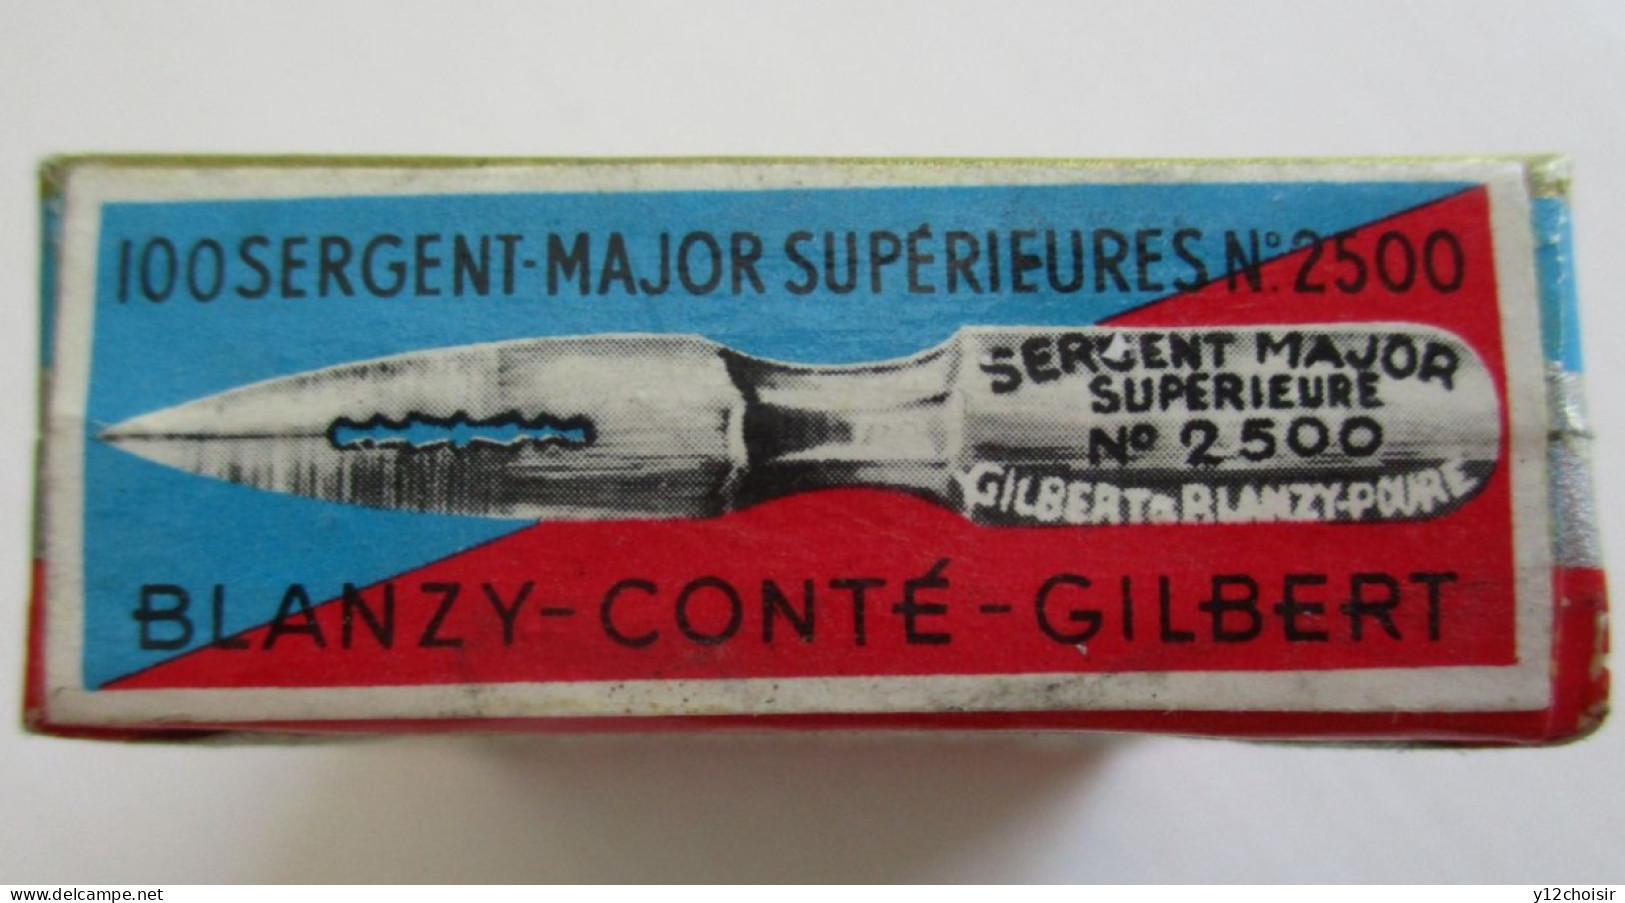 BOITE NEUVE 100 PLUMES SERGENT MAJOR SUPERIEURE BLANZY-CONTE-GILBERT  " BATAILLE DE FLEURUS 1794 " - Plumes